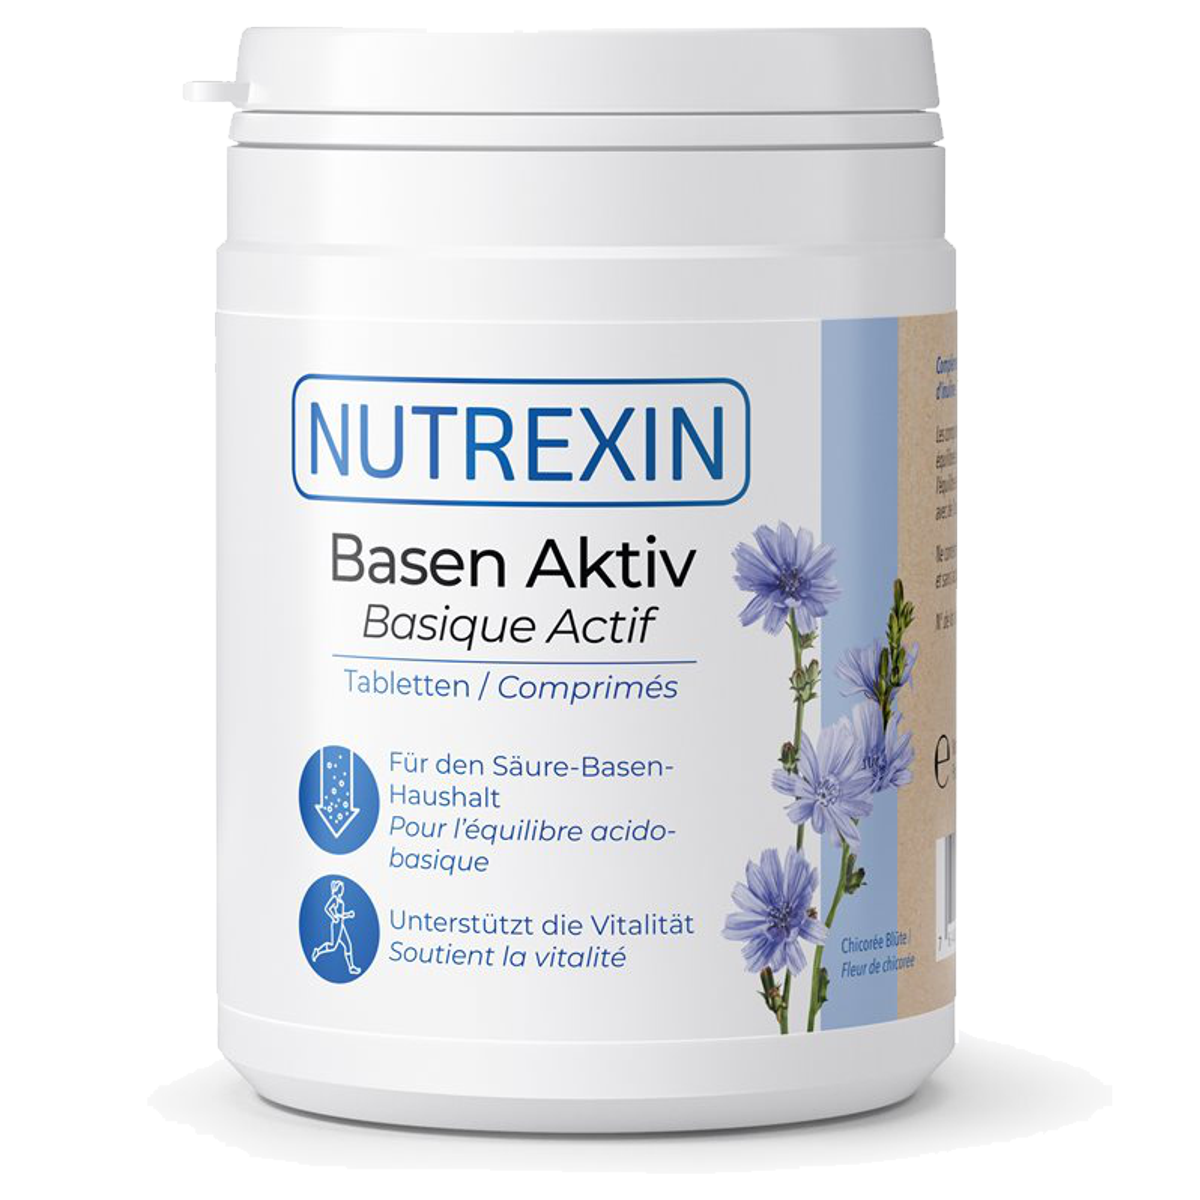 Nutrexin Basen-Aktiv Tabletten